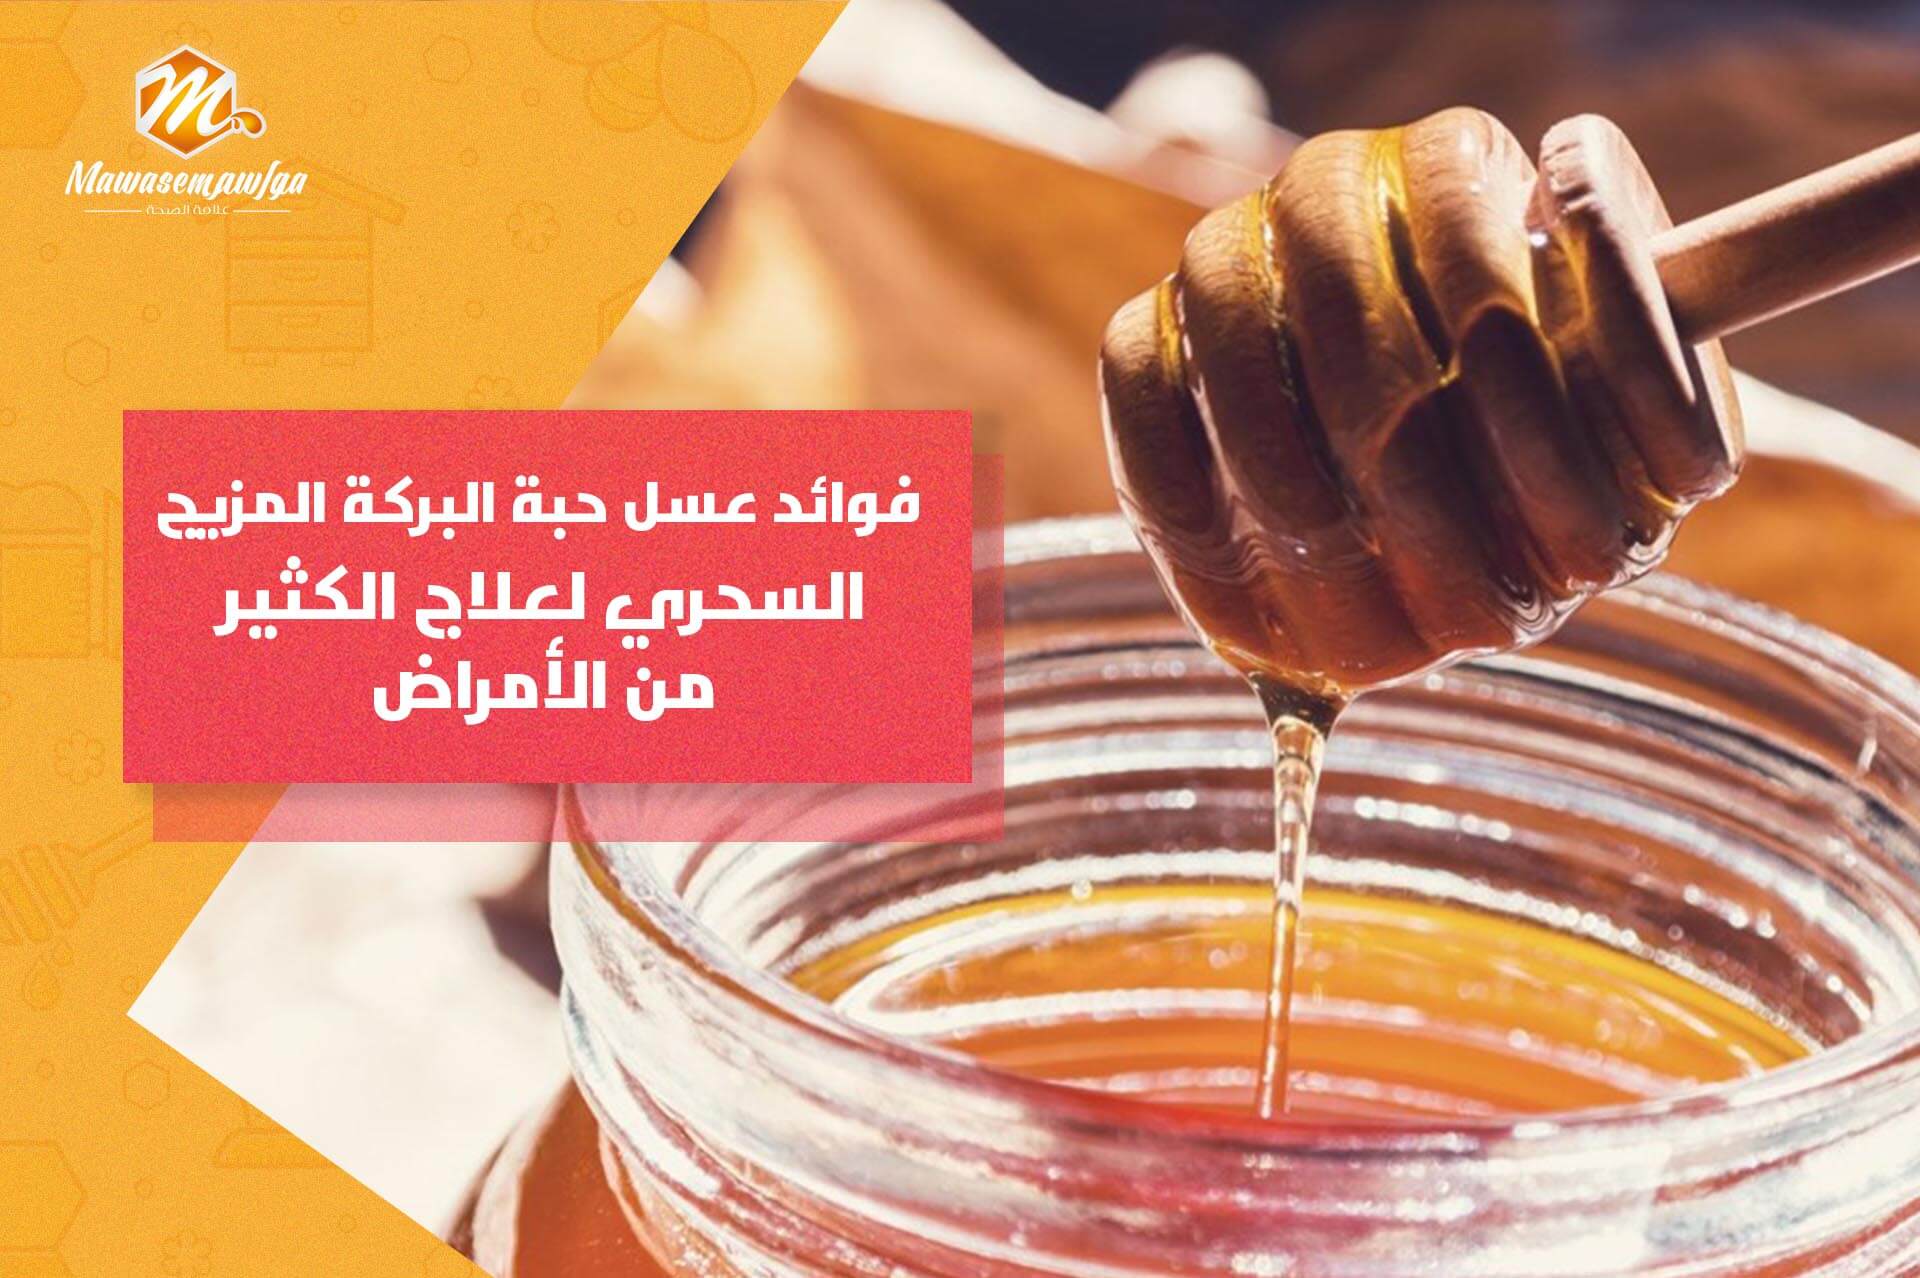 فوائد عسل حبة البركة المزيج السحري لعلاج الكثير من الأمراض | مواسم أصل العسل  الجبلي بمصر